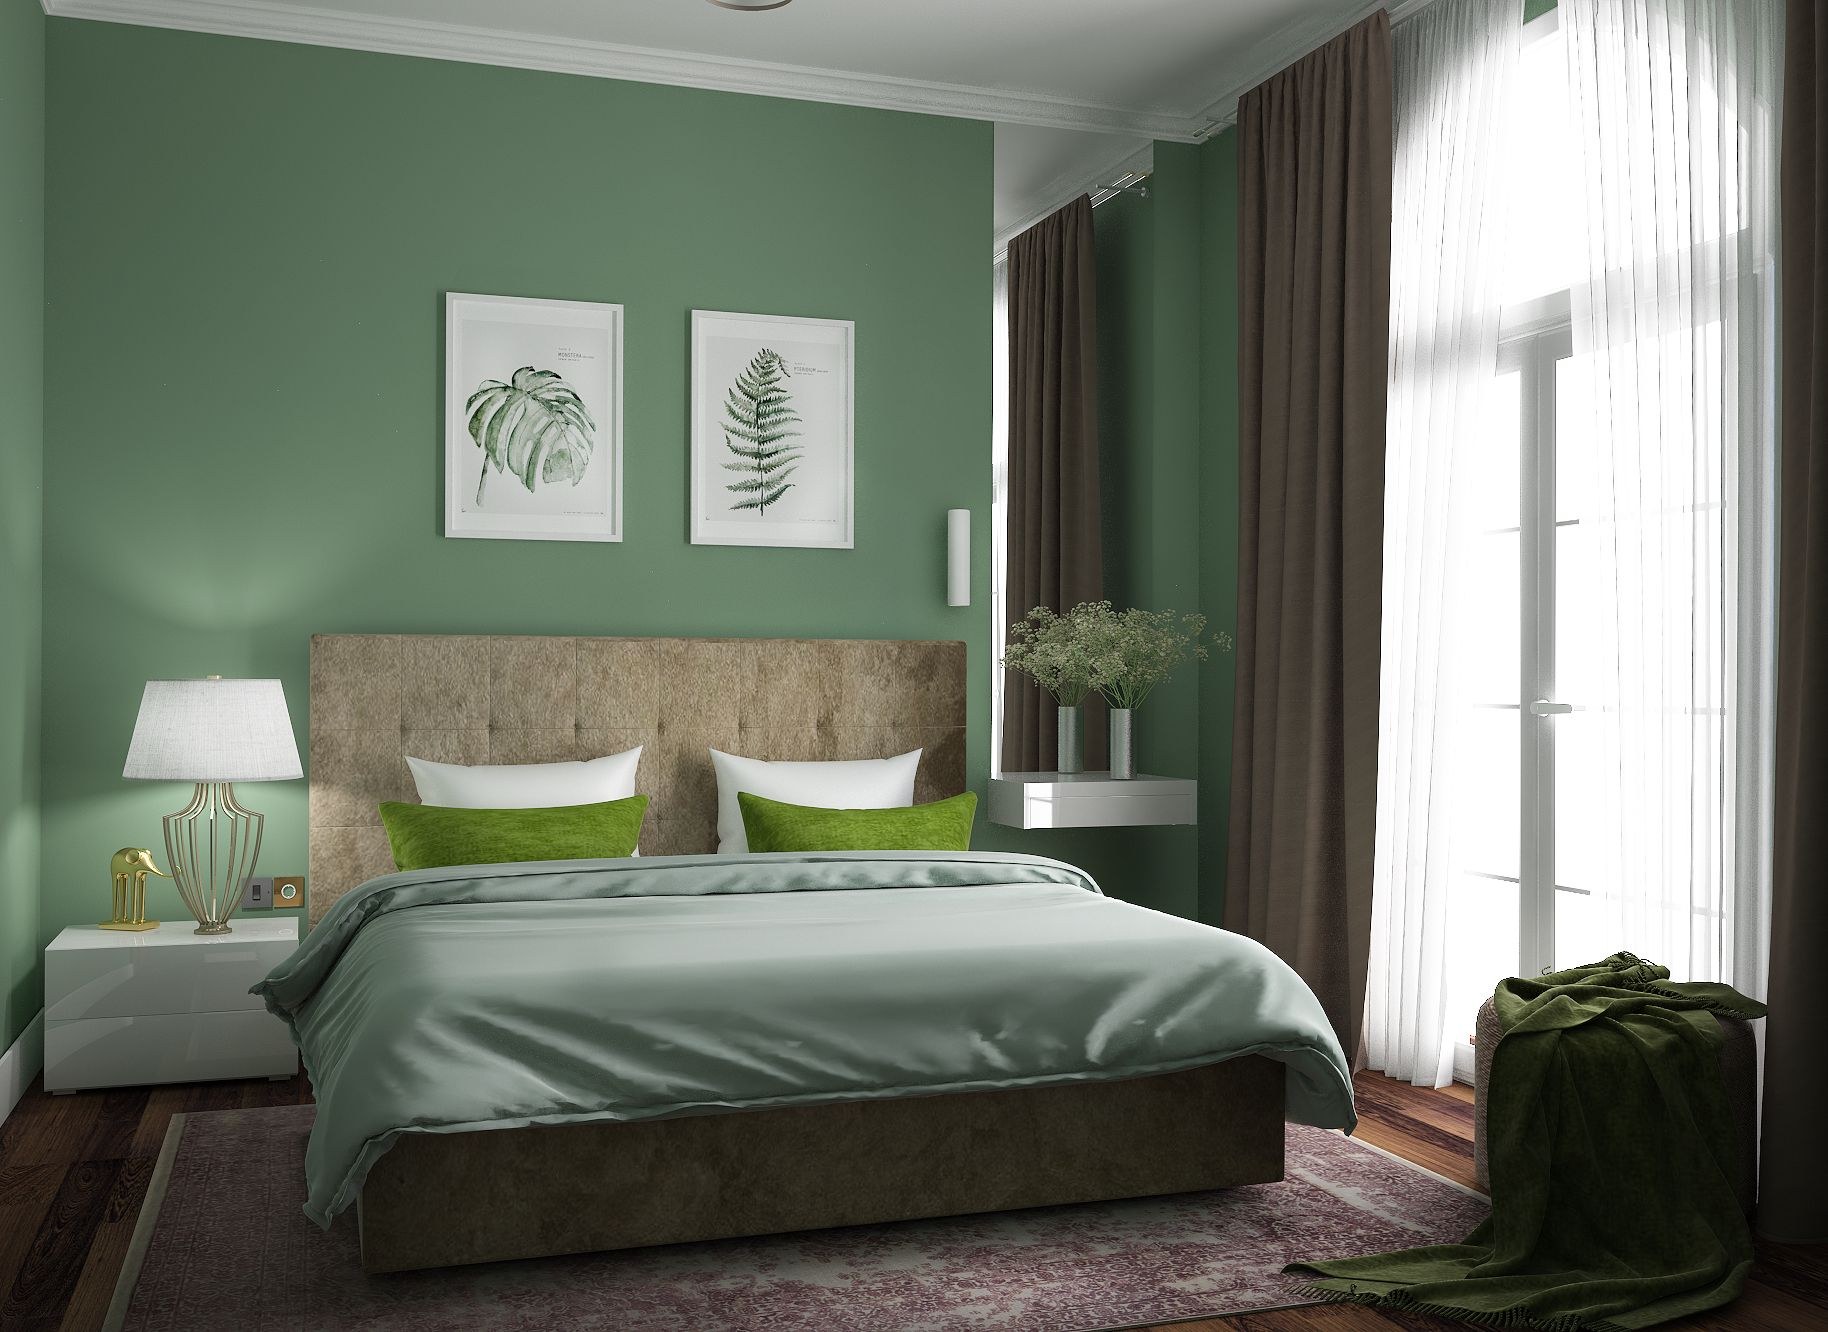 Обои зелено коричневые. Спальня в зеленом цвете. Спальня в зеленом стиле. Интерьер спальни в зеленых тонах. Болотный цвет стен в интерьере.